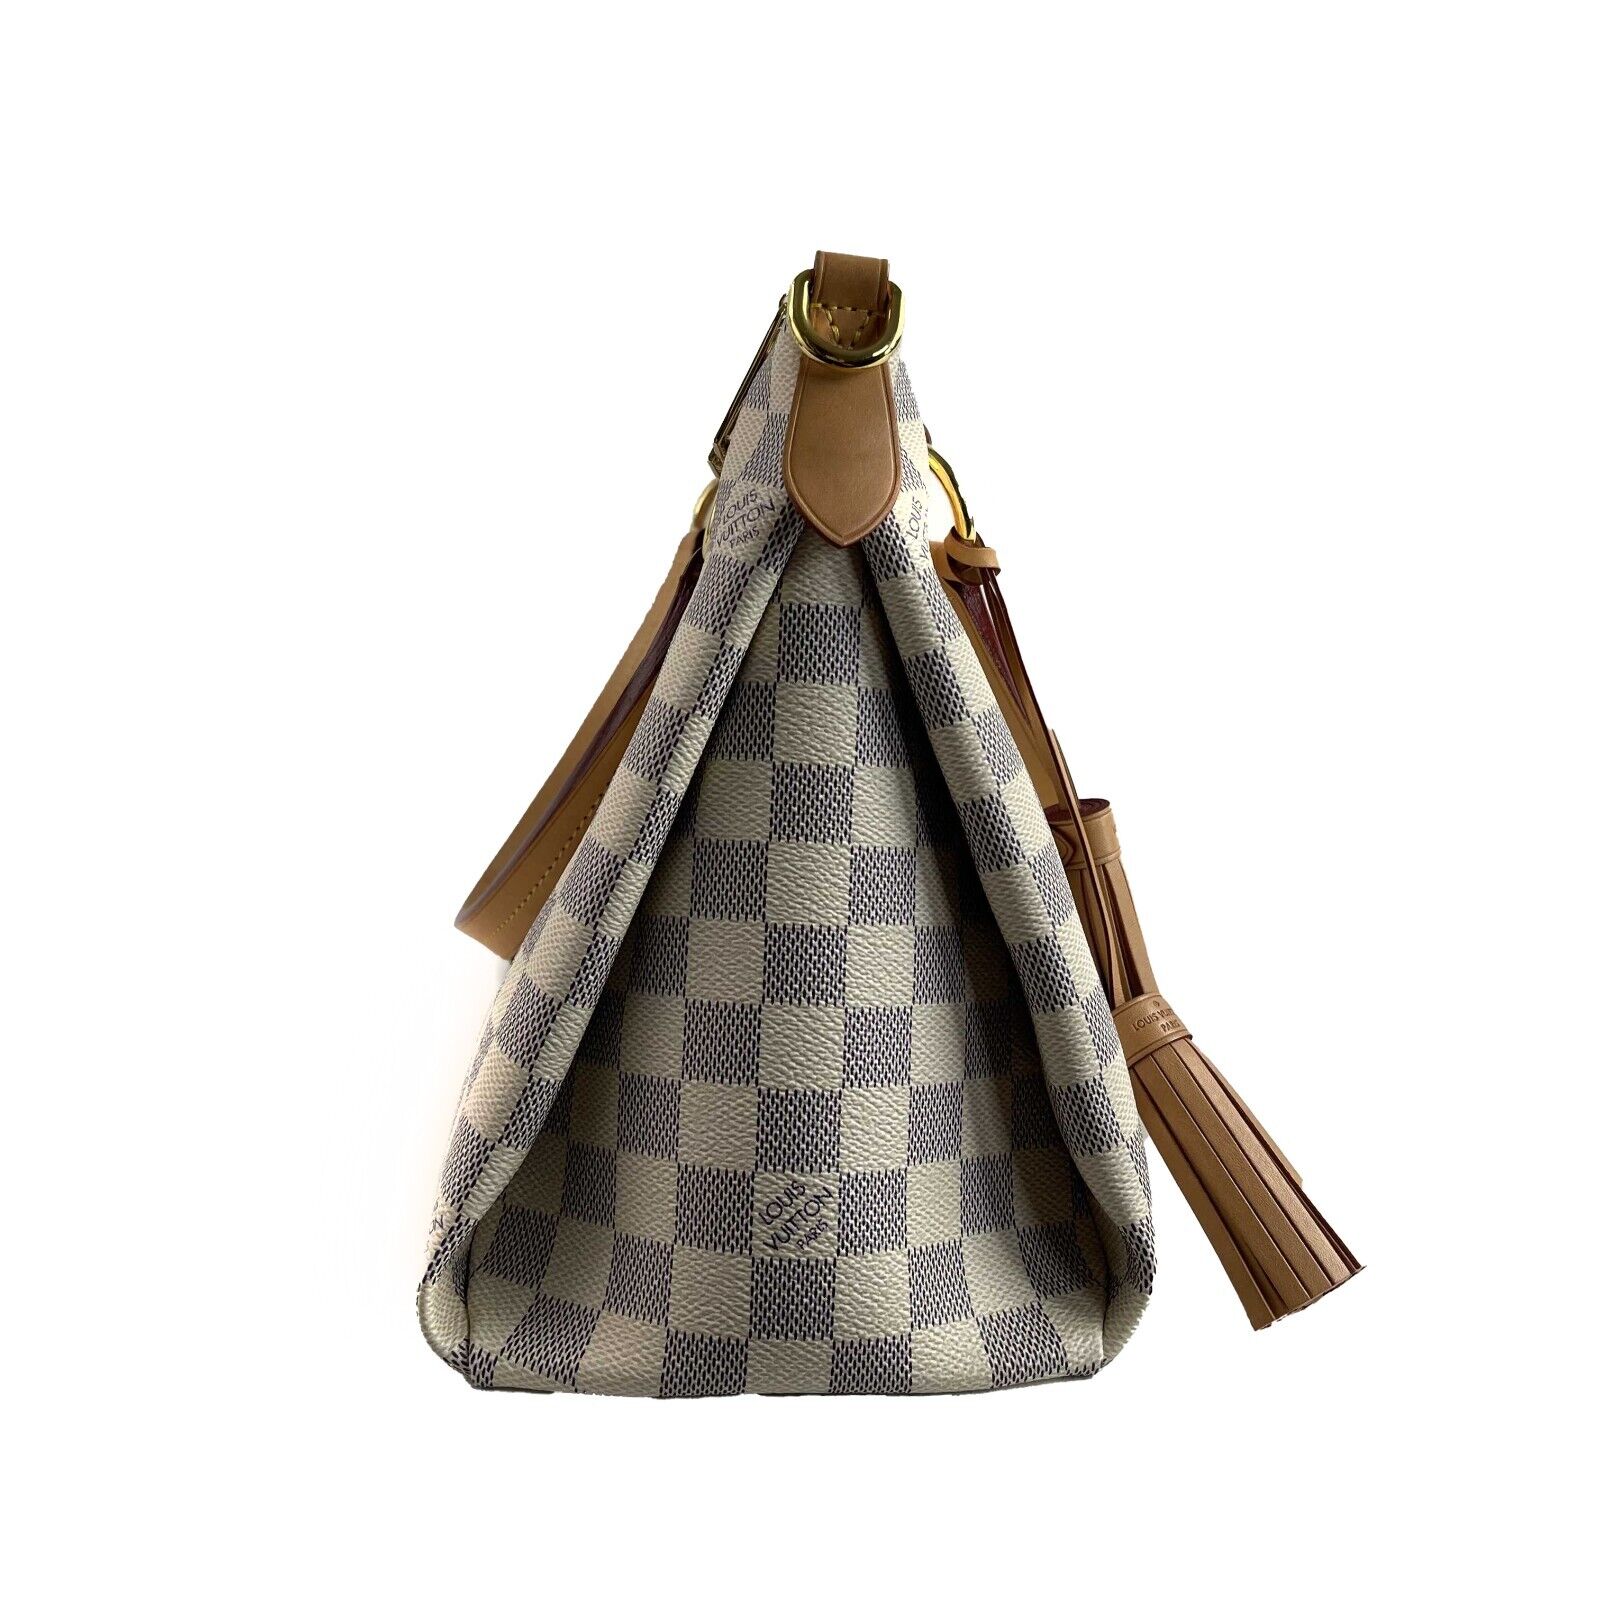 Louis Vuitton Lymington Damier Azur Tote Bag